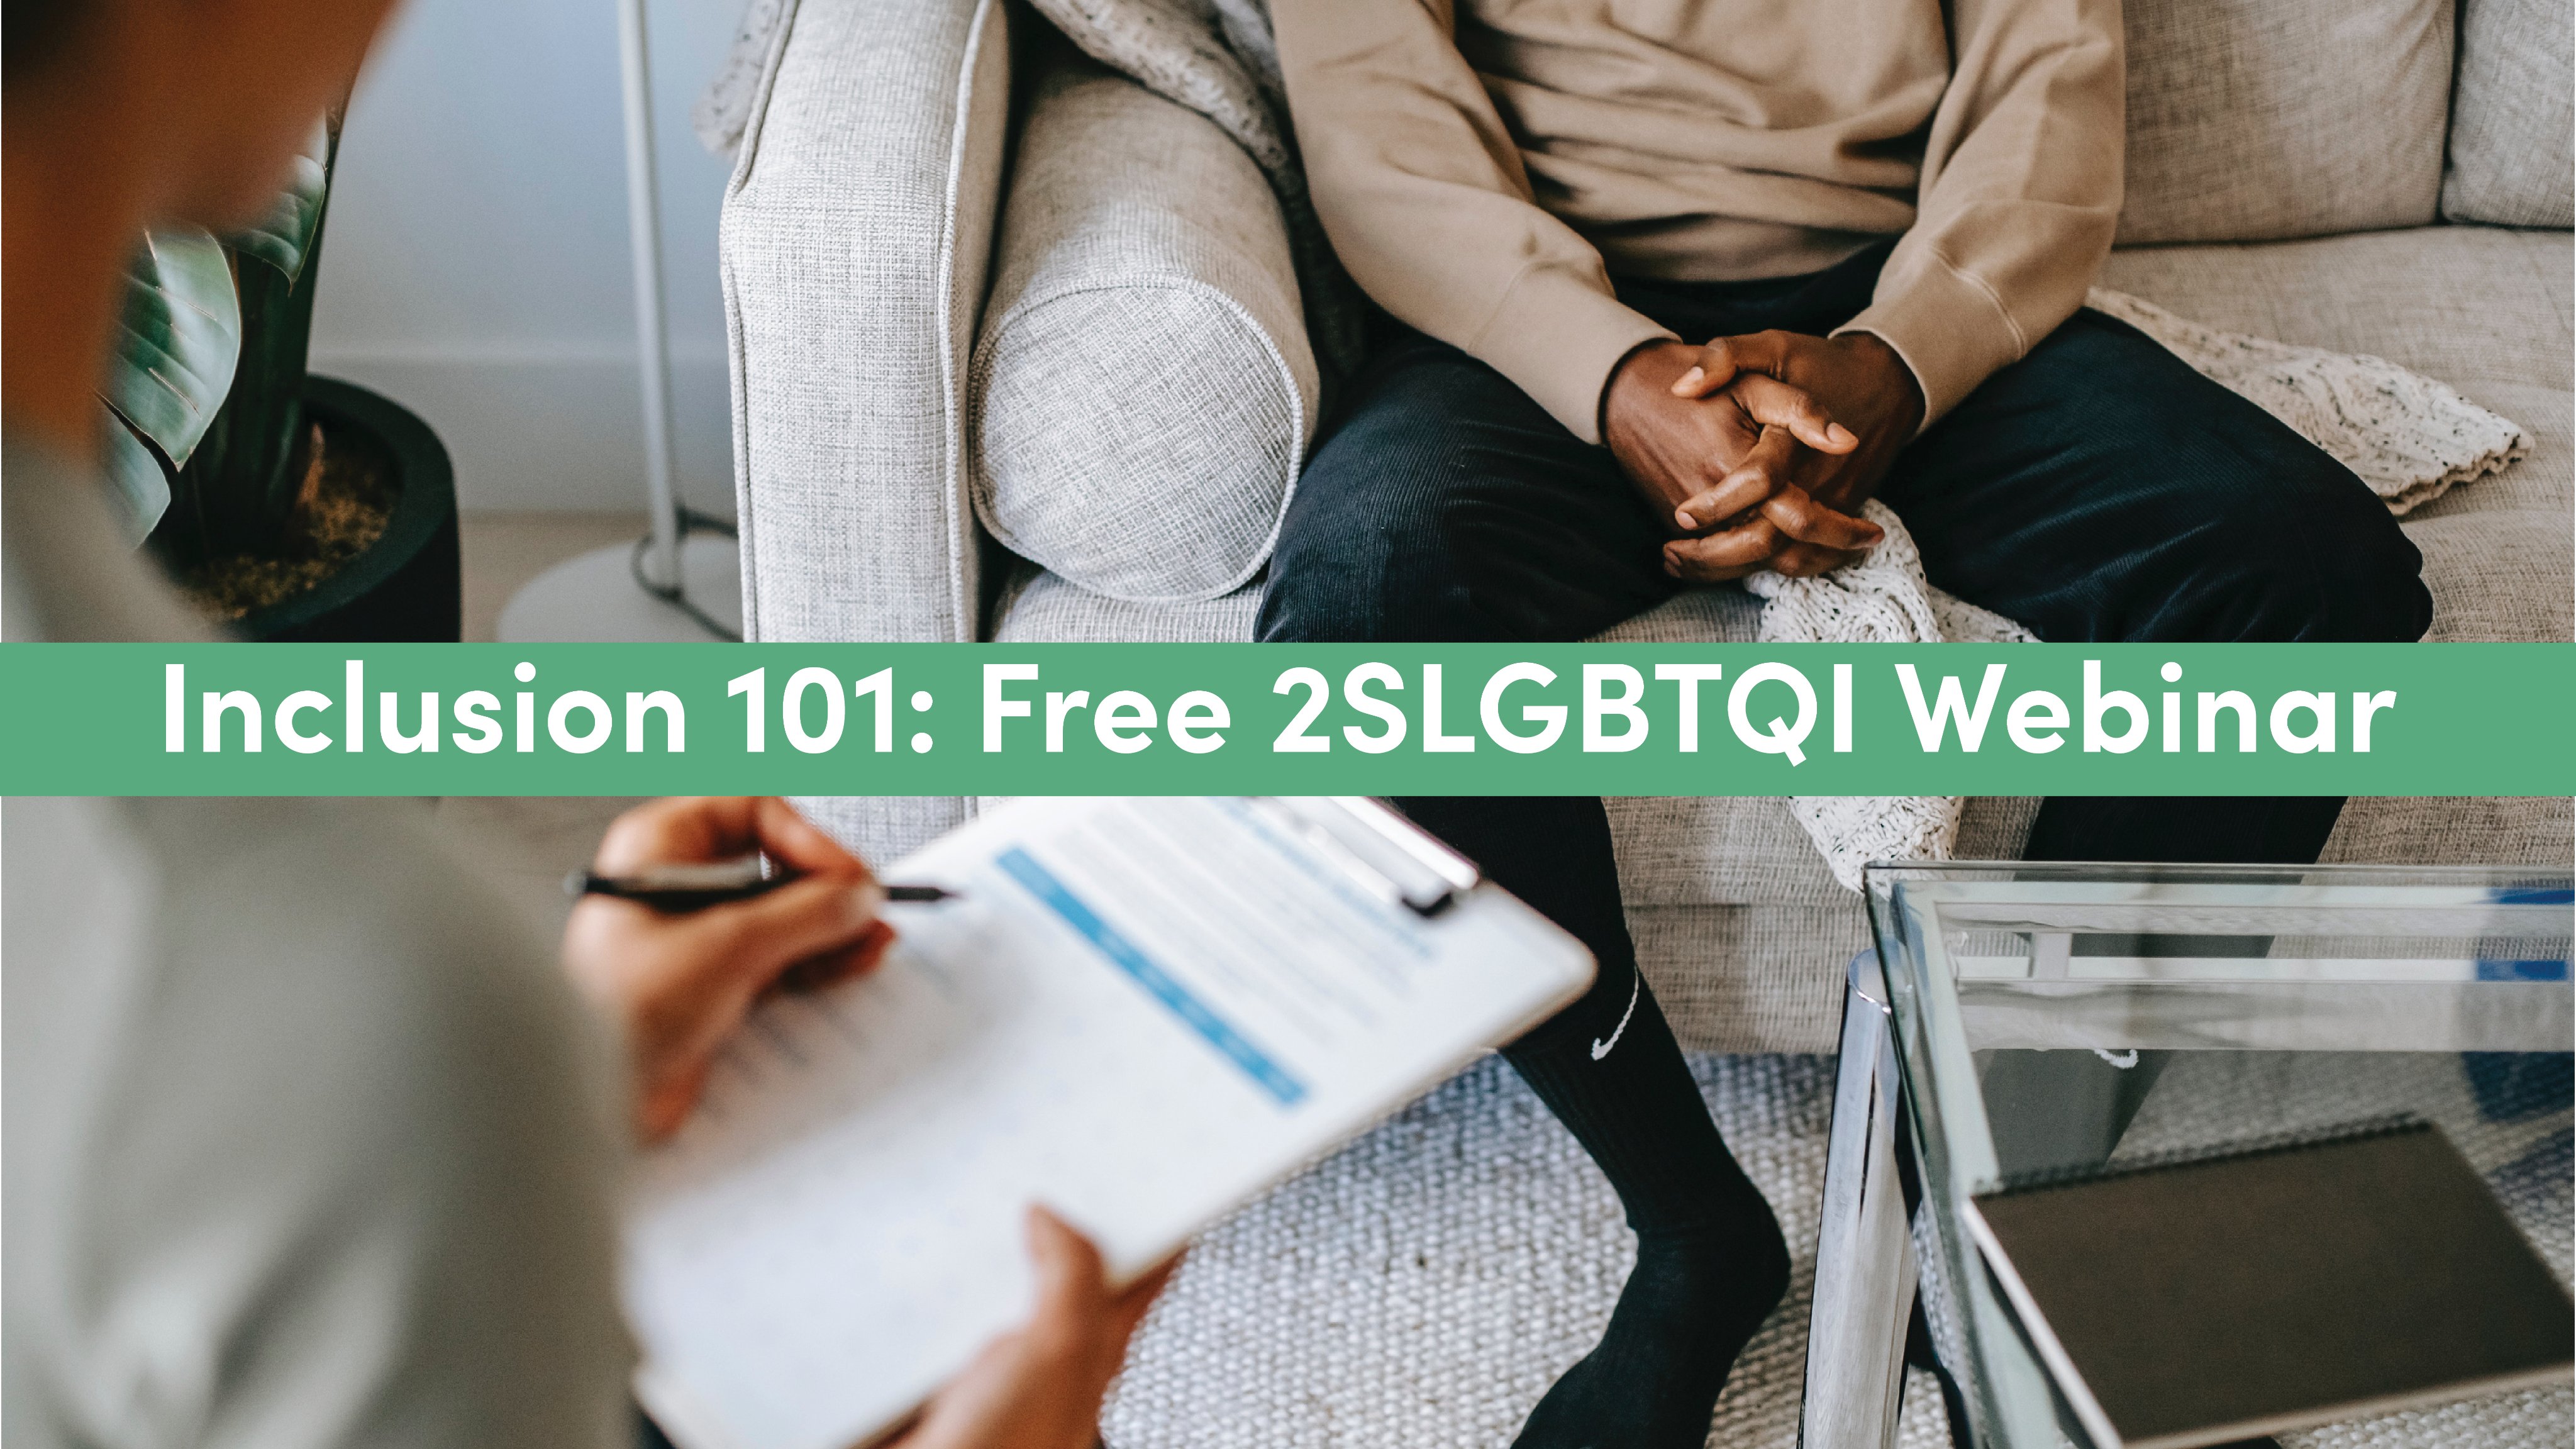 Inclusion 101: Free 2SLGBTQI Webinar